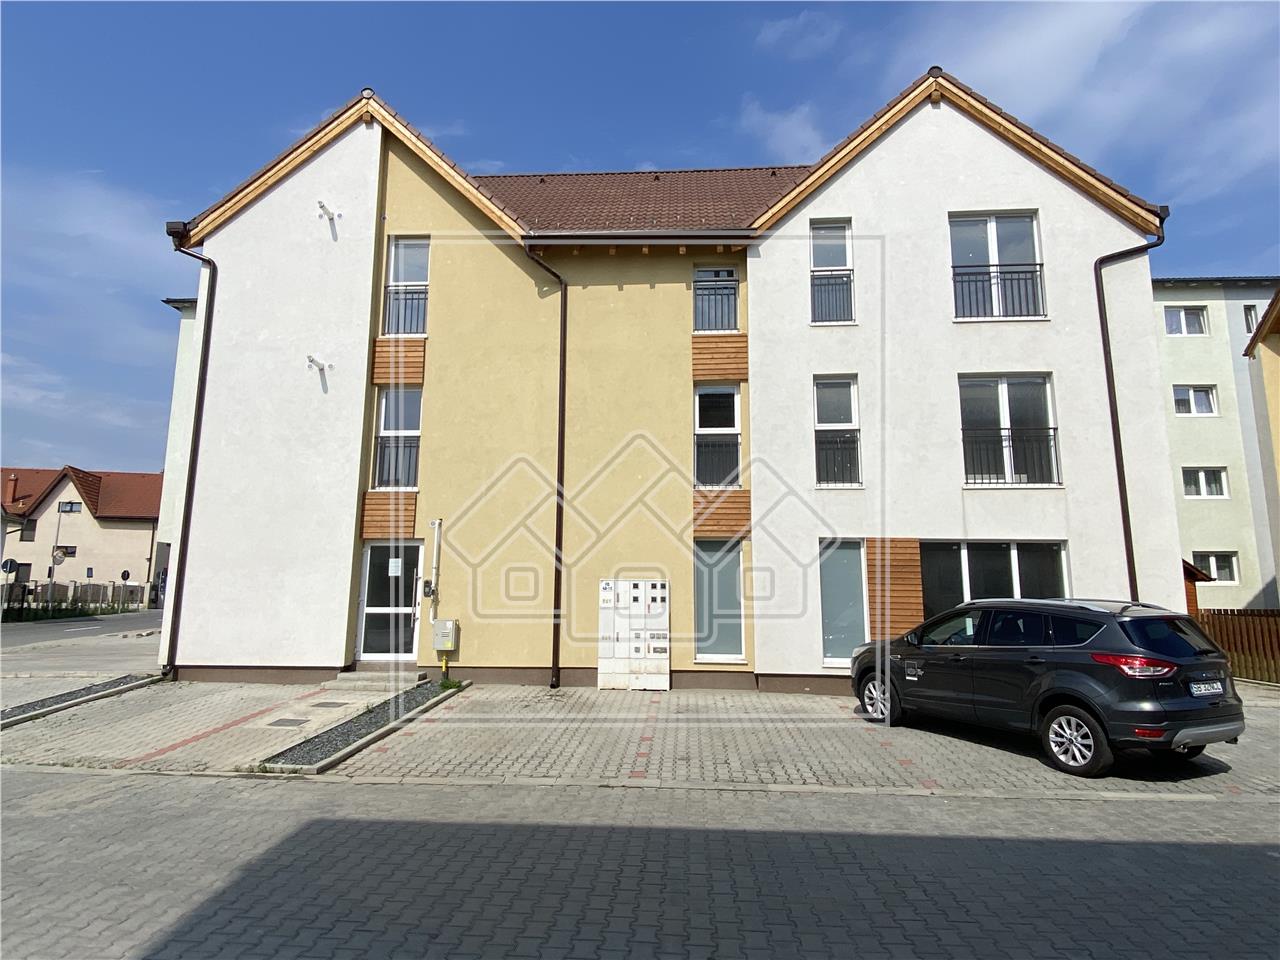 Apartament de vanzare Sibiu - 3 cam.,et 1, Partial mobilat - Etaj 1/2